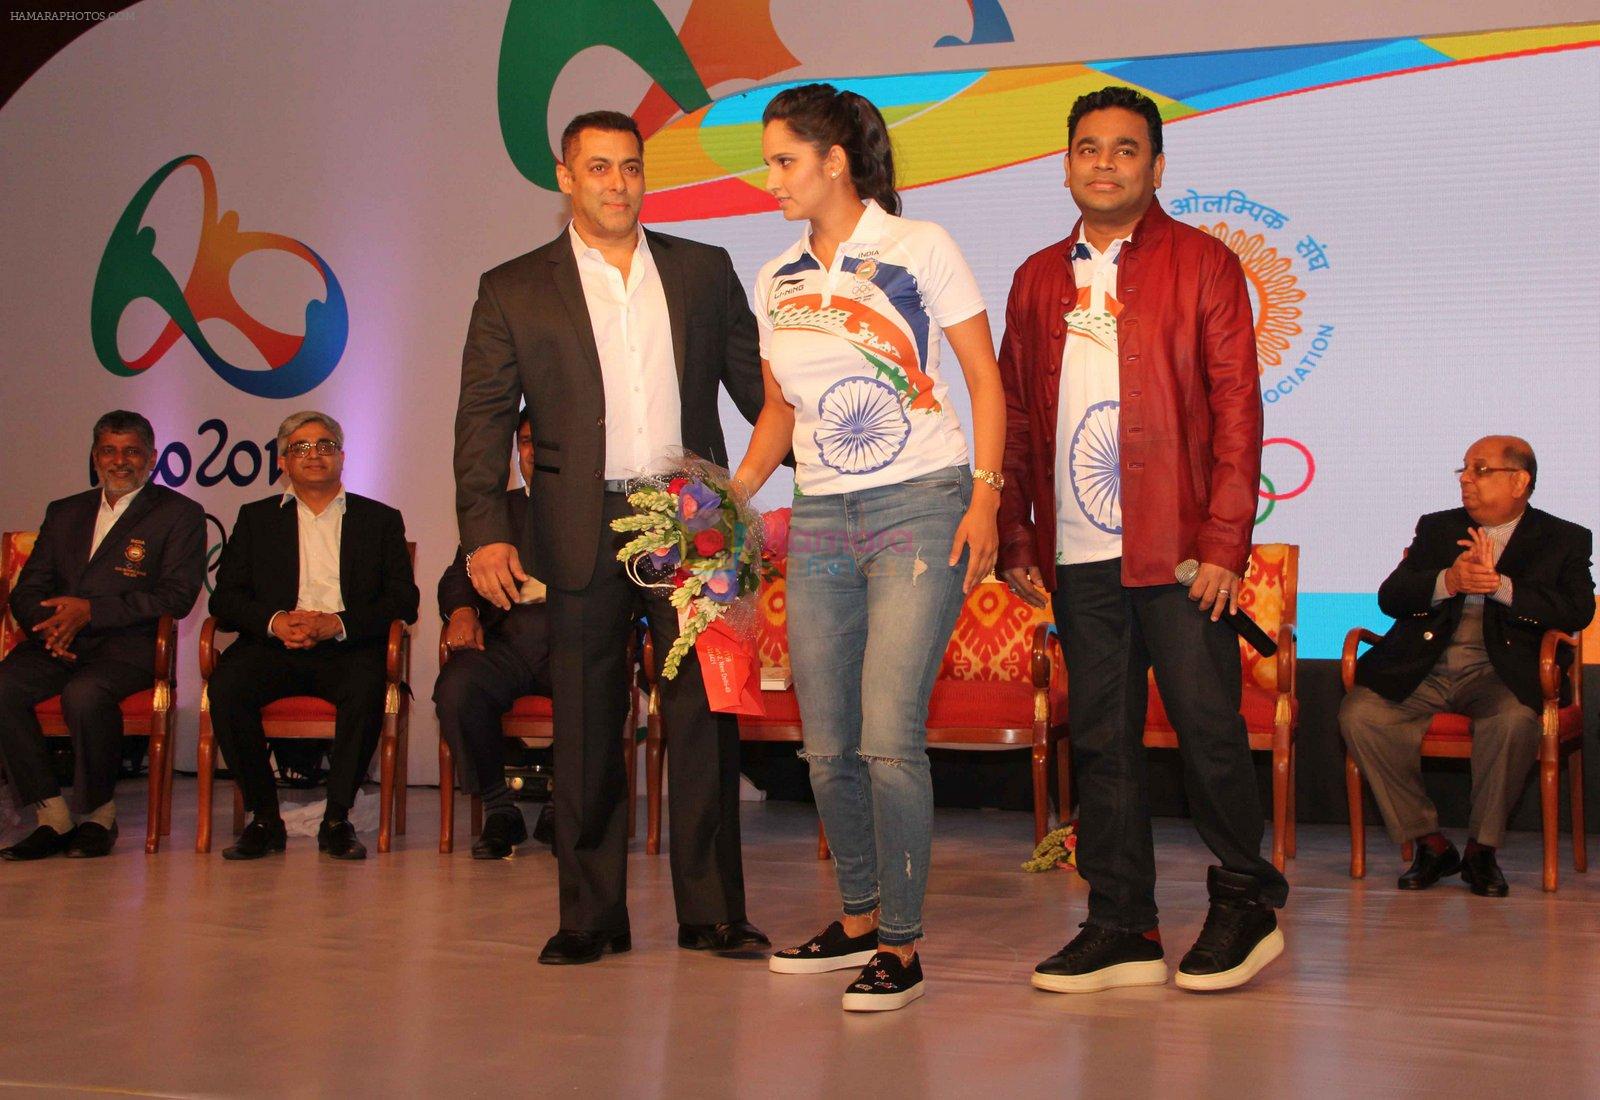 Salman Khan, A R Rahman, Sania Mirza at Rio Olympics meet in Delhi on 18th July 2016